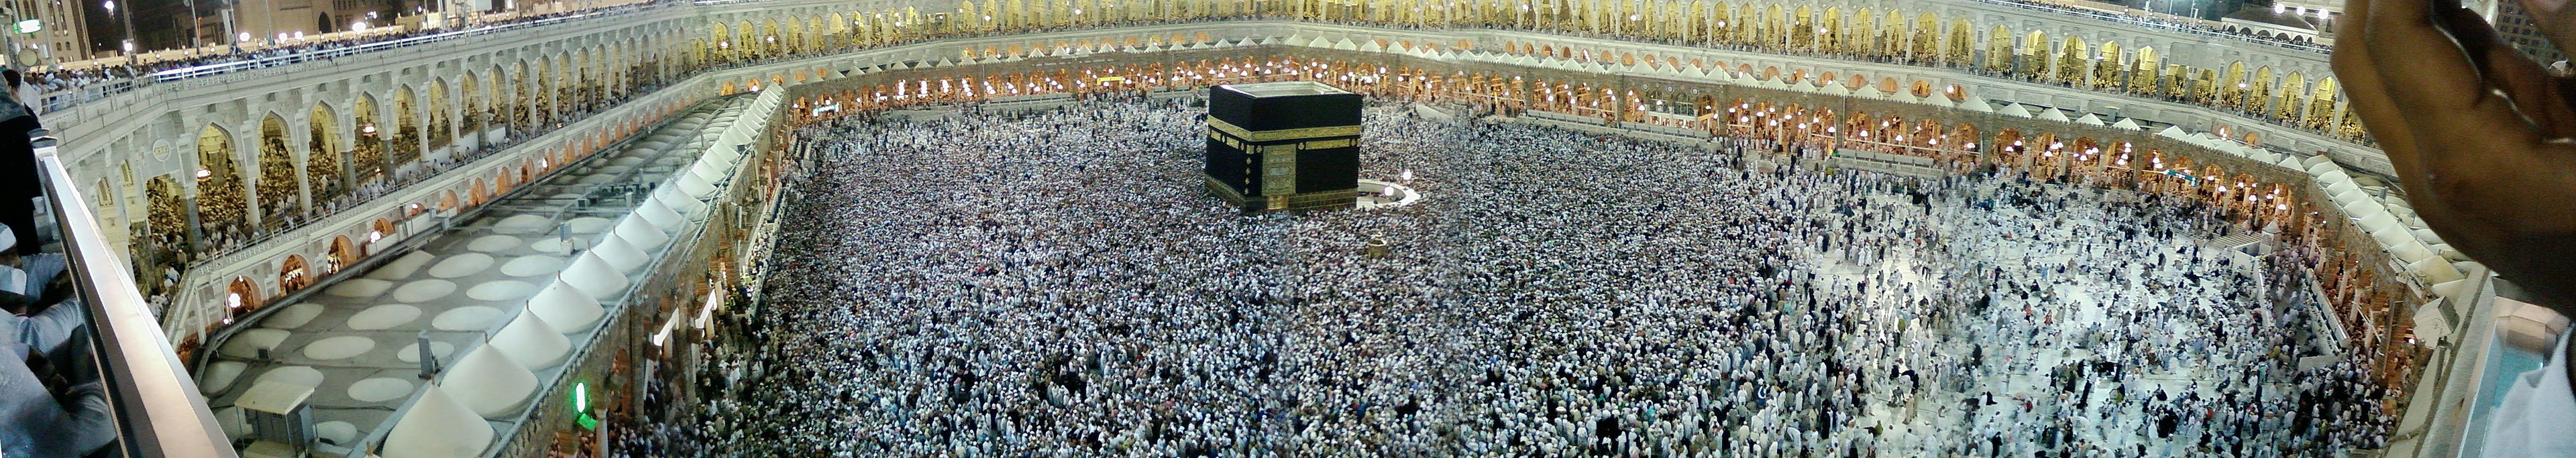 صورة بانورامية للحرم المكي Mekka al HaramMoschee panorama Wikipedia CC BY 3.0